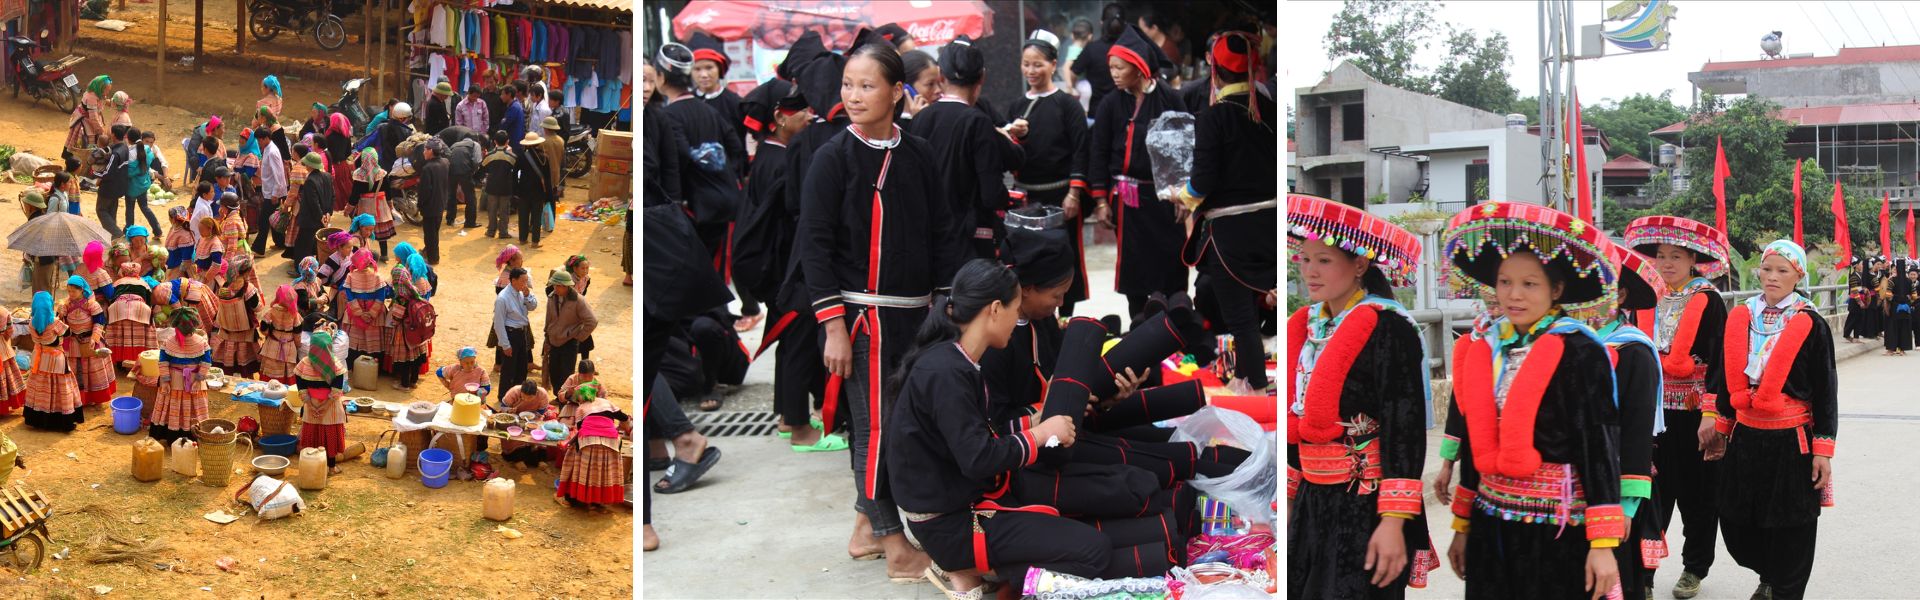 10 migliori mercati etnici nel Vietnam del nord